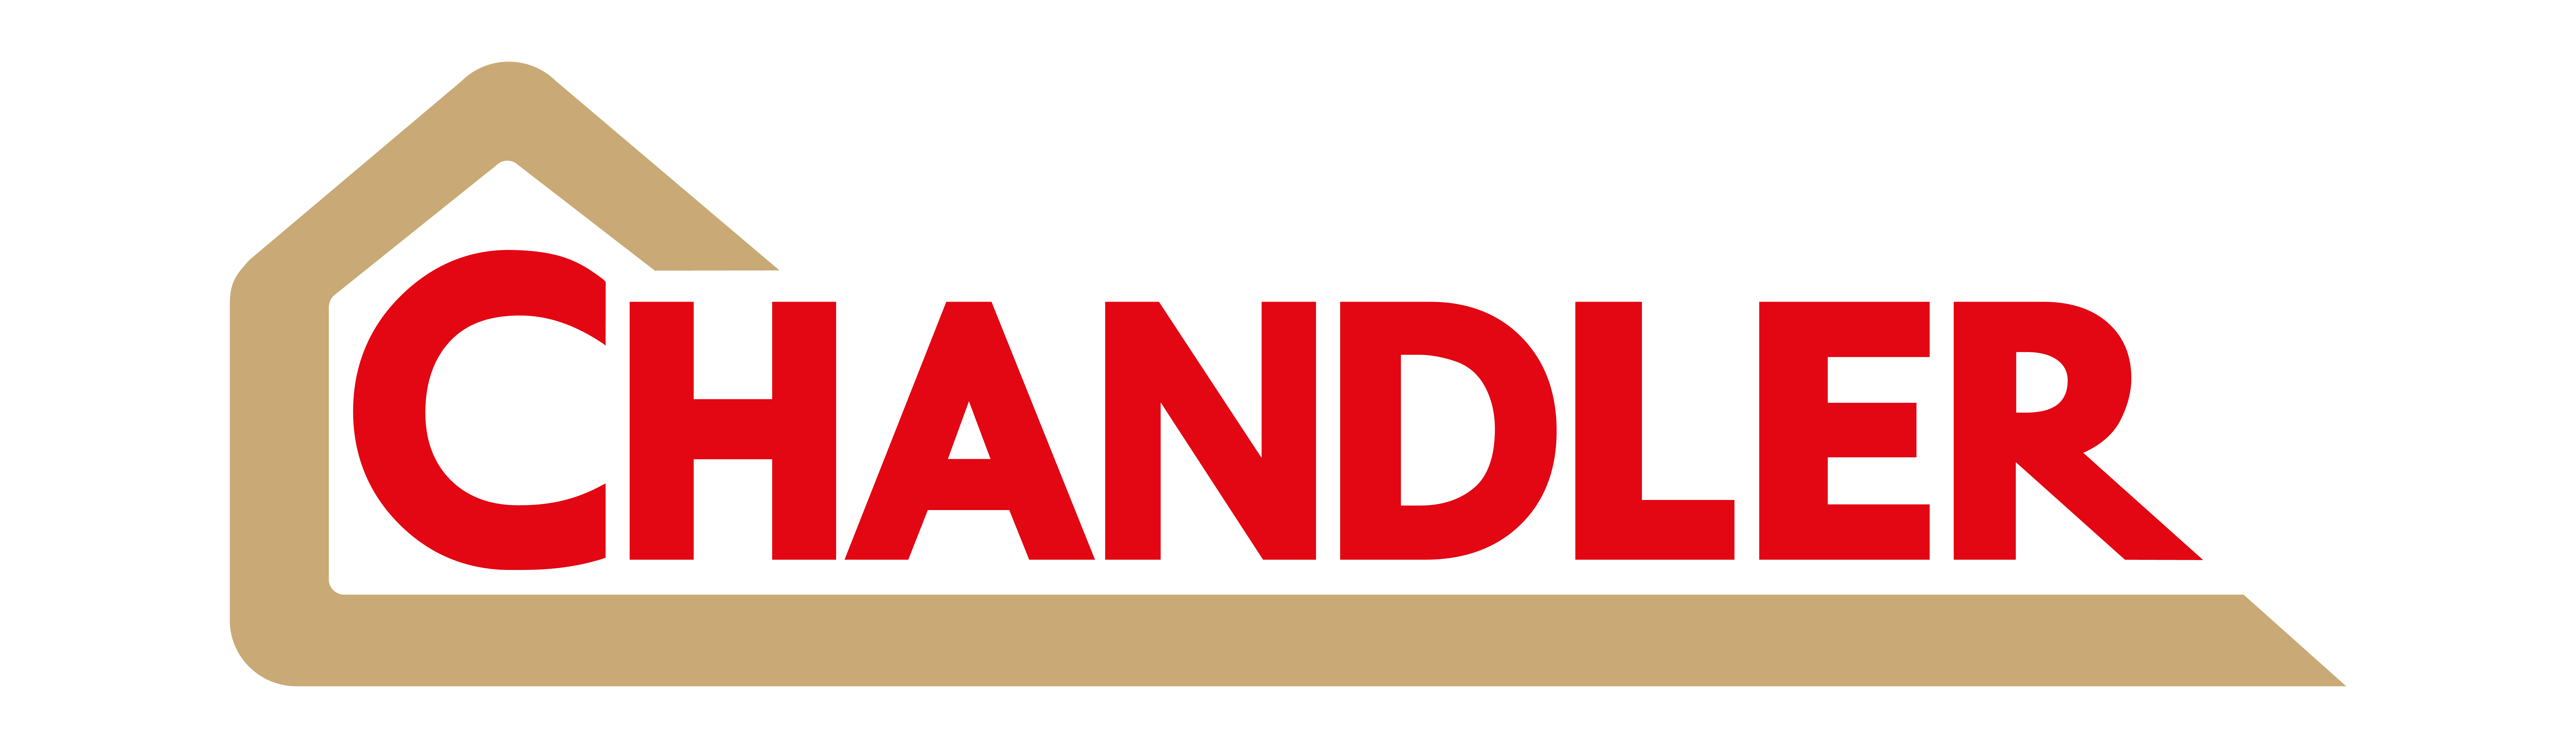 Chandler Logos_No url